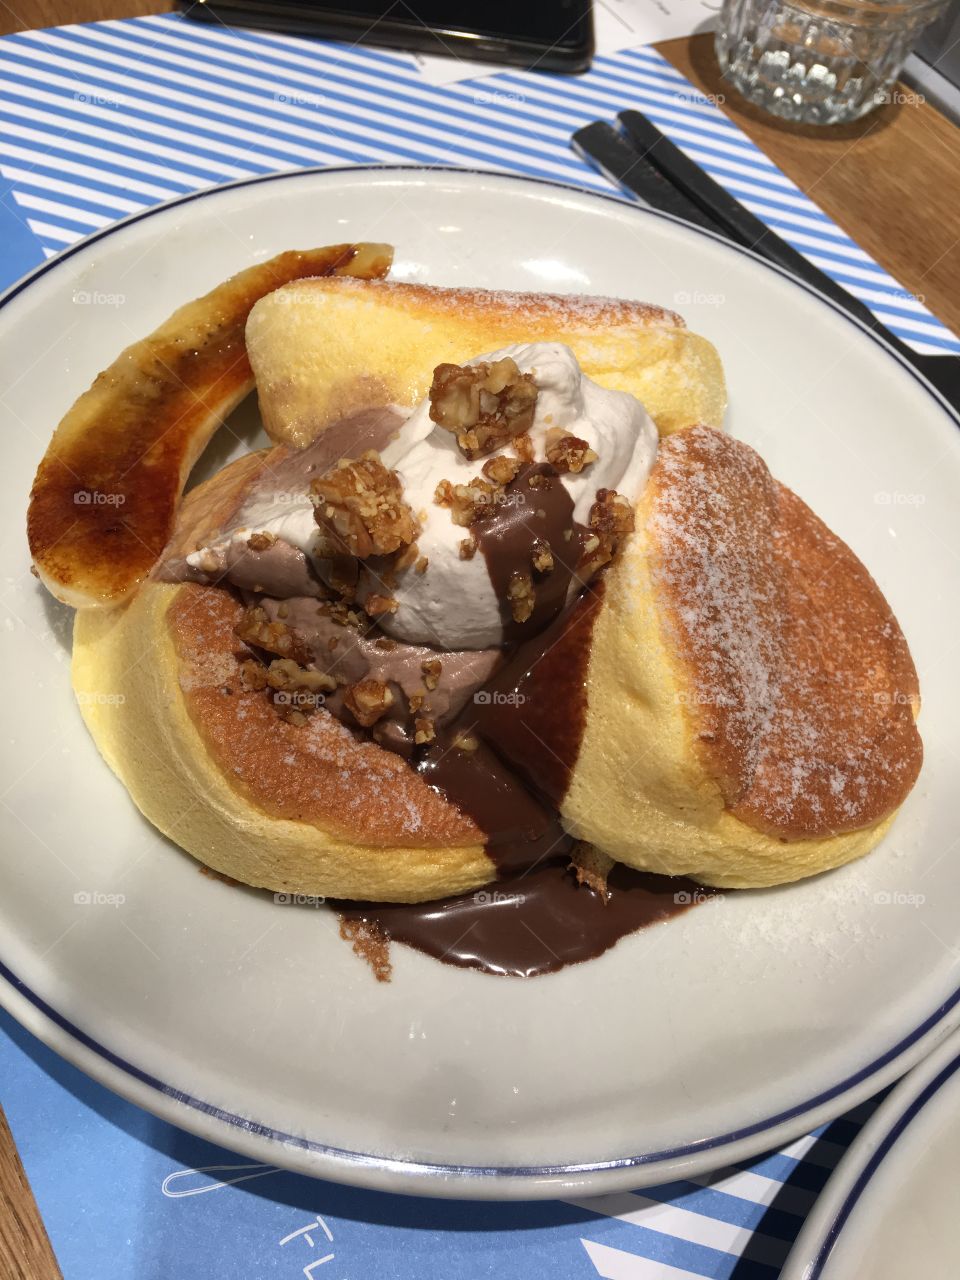 Soufflé pancakes